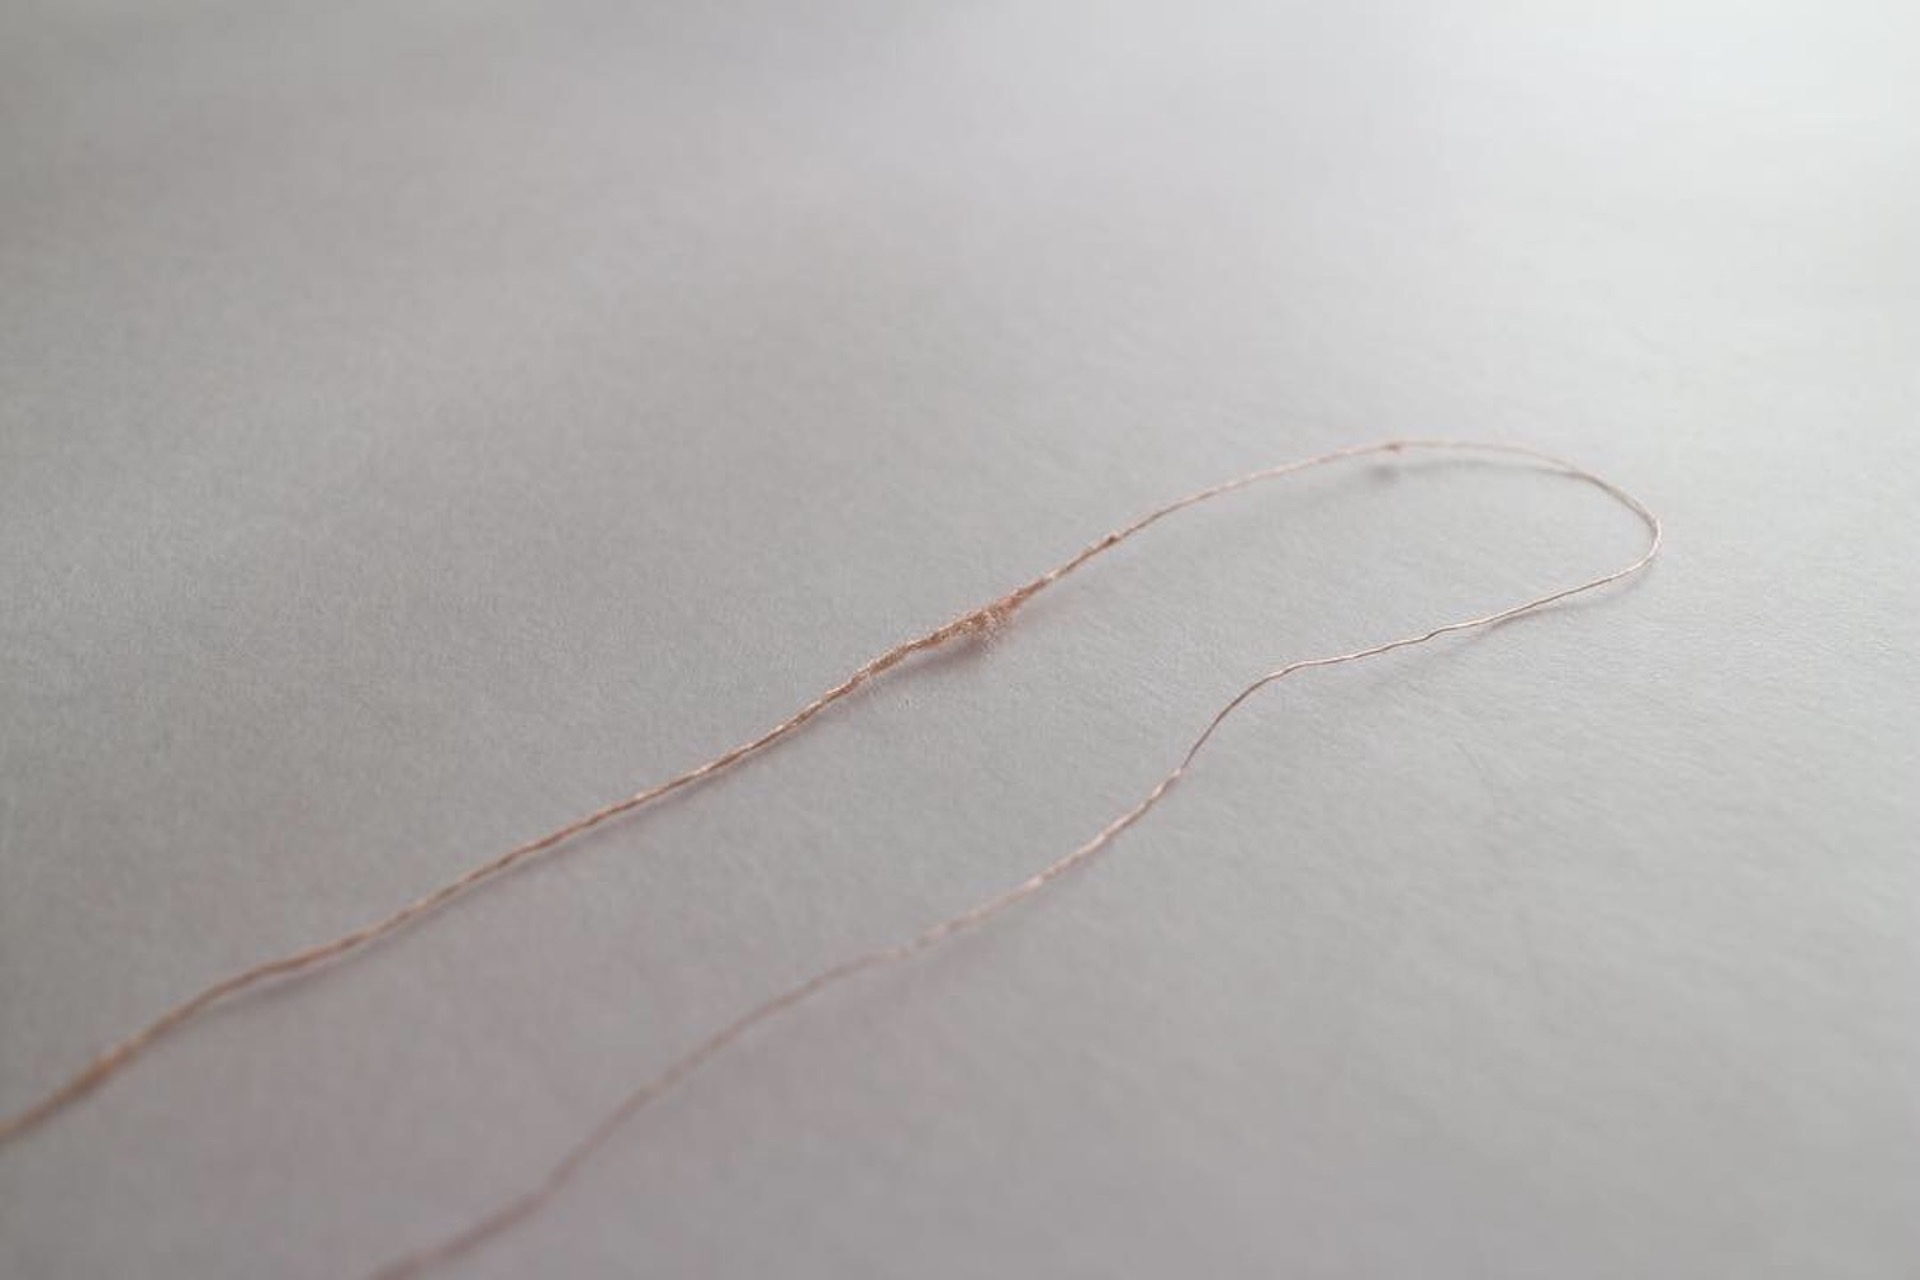 【STORY】意味のある仕事として、糸を編みたい気持ち。　hagiさんでの展示に向けて